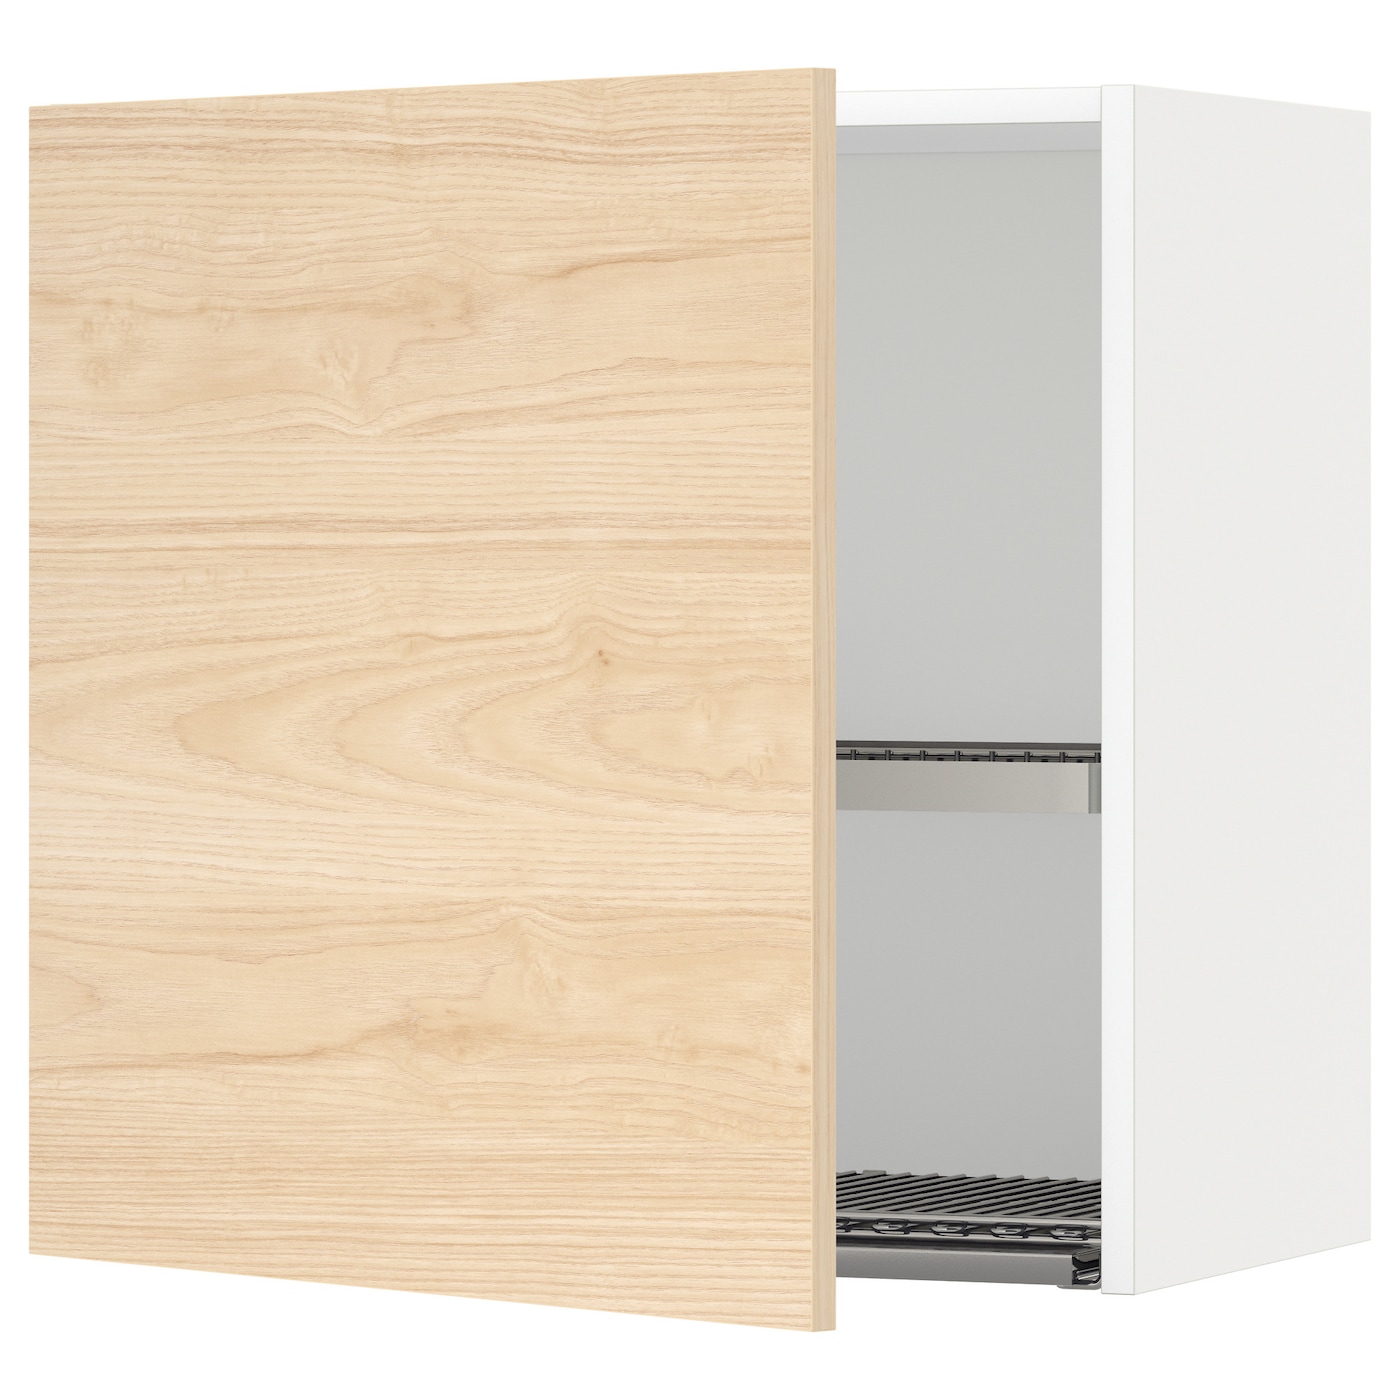 Навесной шкаф с сушилкой - METOD IKEA/ МЕТОД ИКЕА, 60х60 см, белый/под беленый дуб